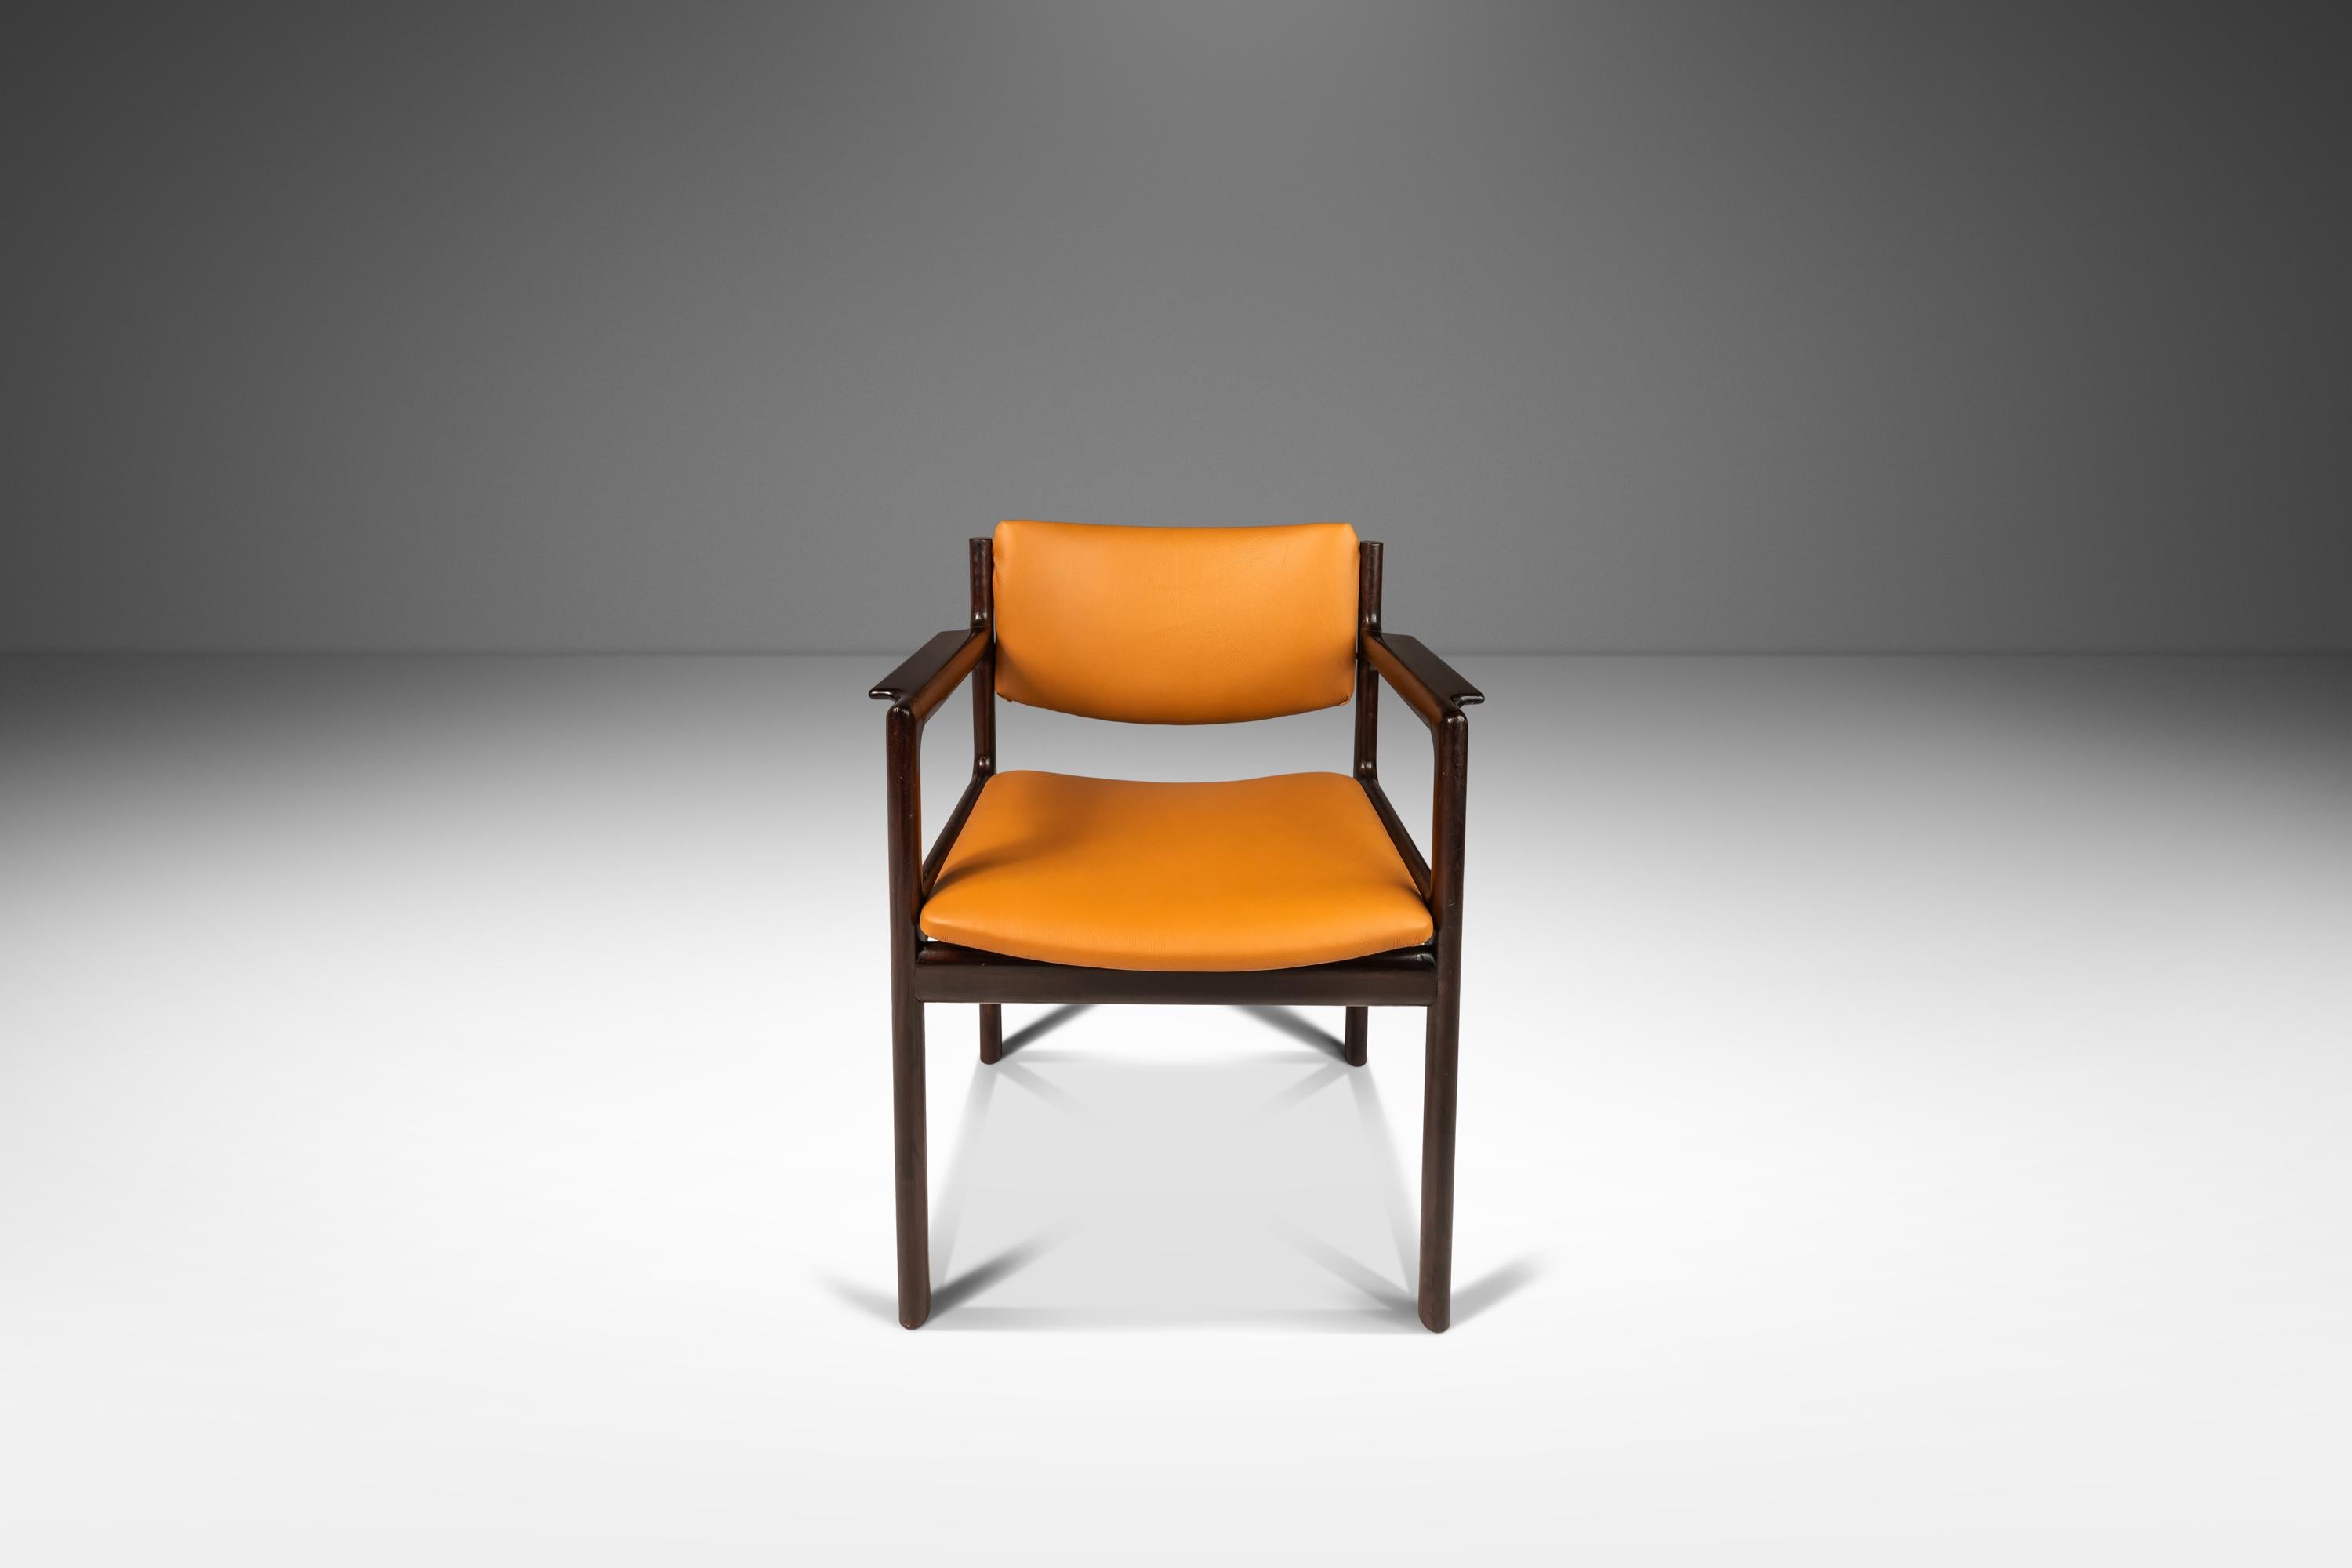 Wir präsentieren eine seltene, limitierte Serie von Sesseln dänischen Designs aus massivem Mahagoni mit neuen italienischen Lederbezügen. Diese außergewöhnlichen Stühle, die gleichzeitig elegant und minimalistisch sind, sind ein Traum für jeden